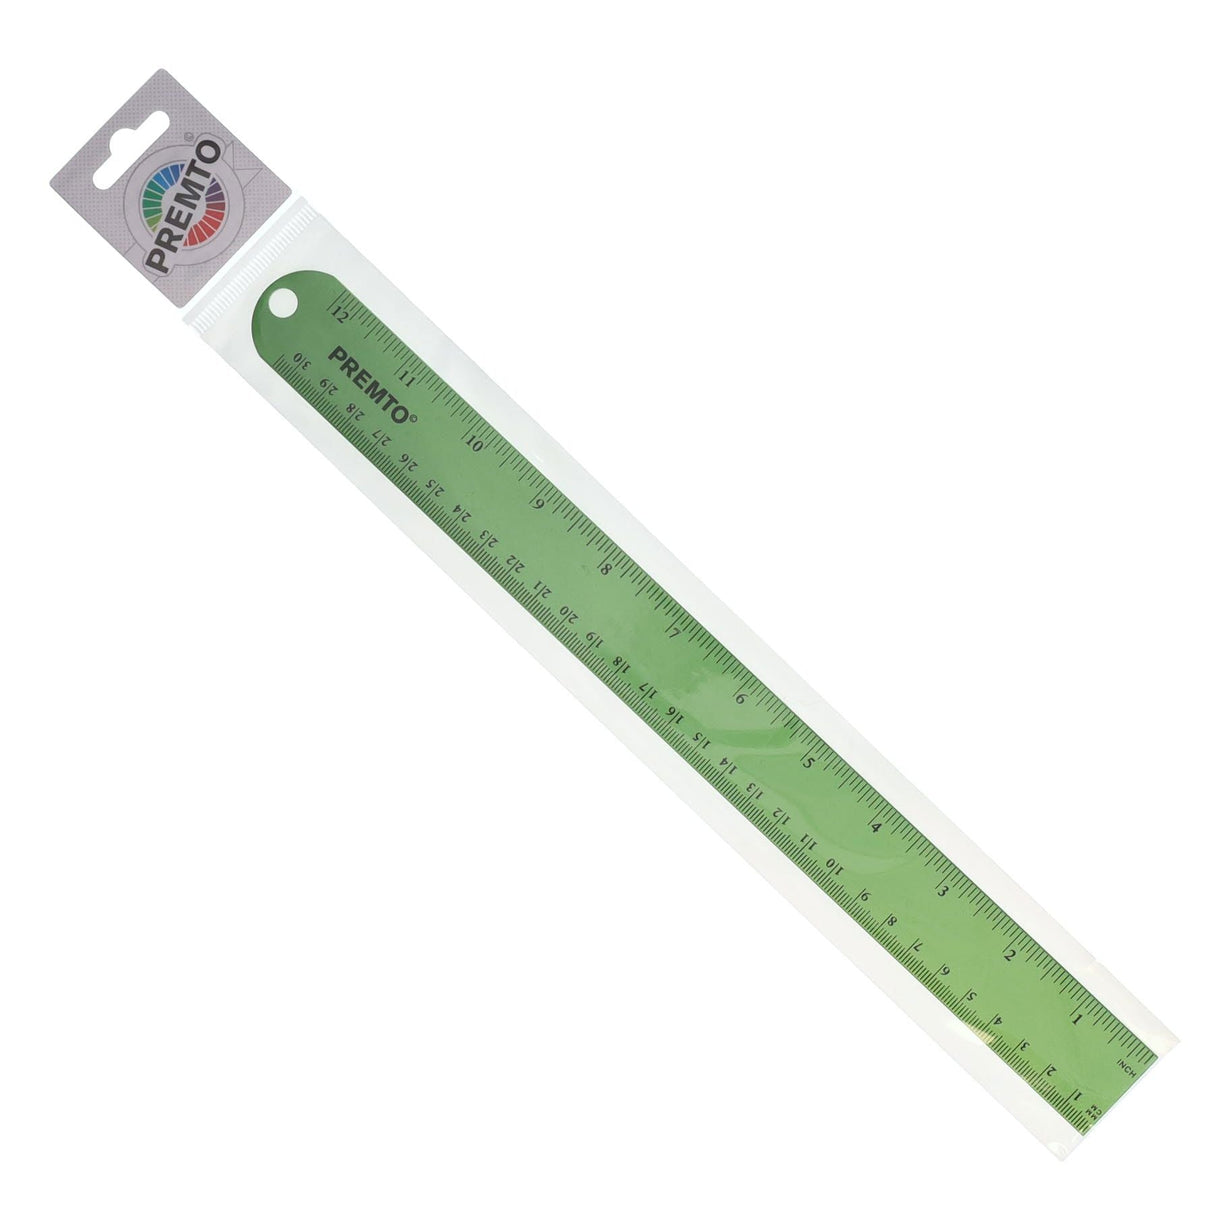 Premto S1 Aluminium Ruler 30cm - Caterpillar Green-Rulers-Premto|StationeryShop.co.uk